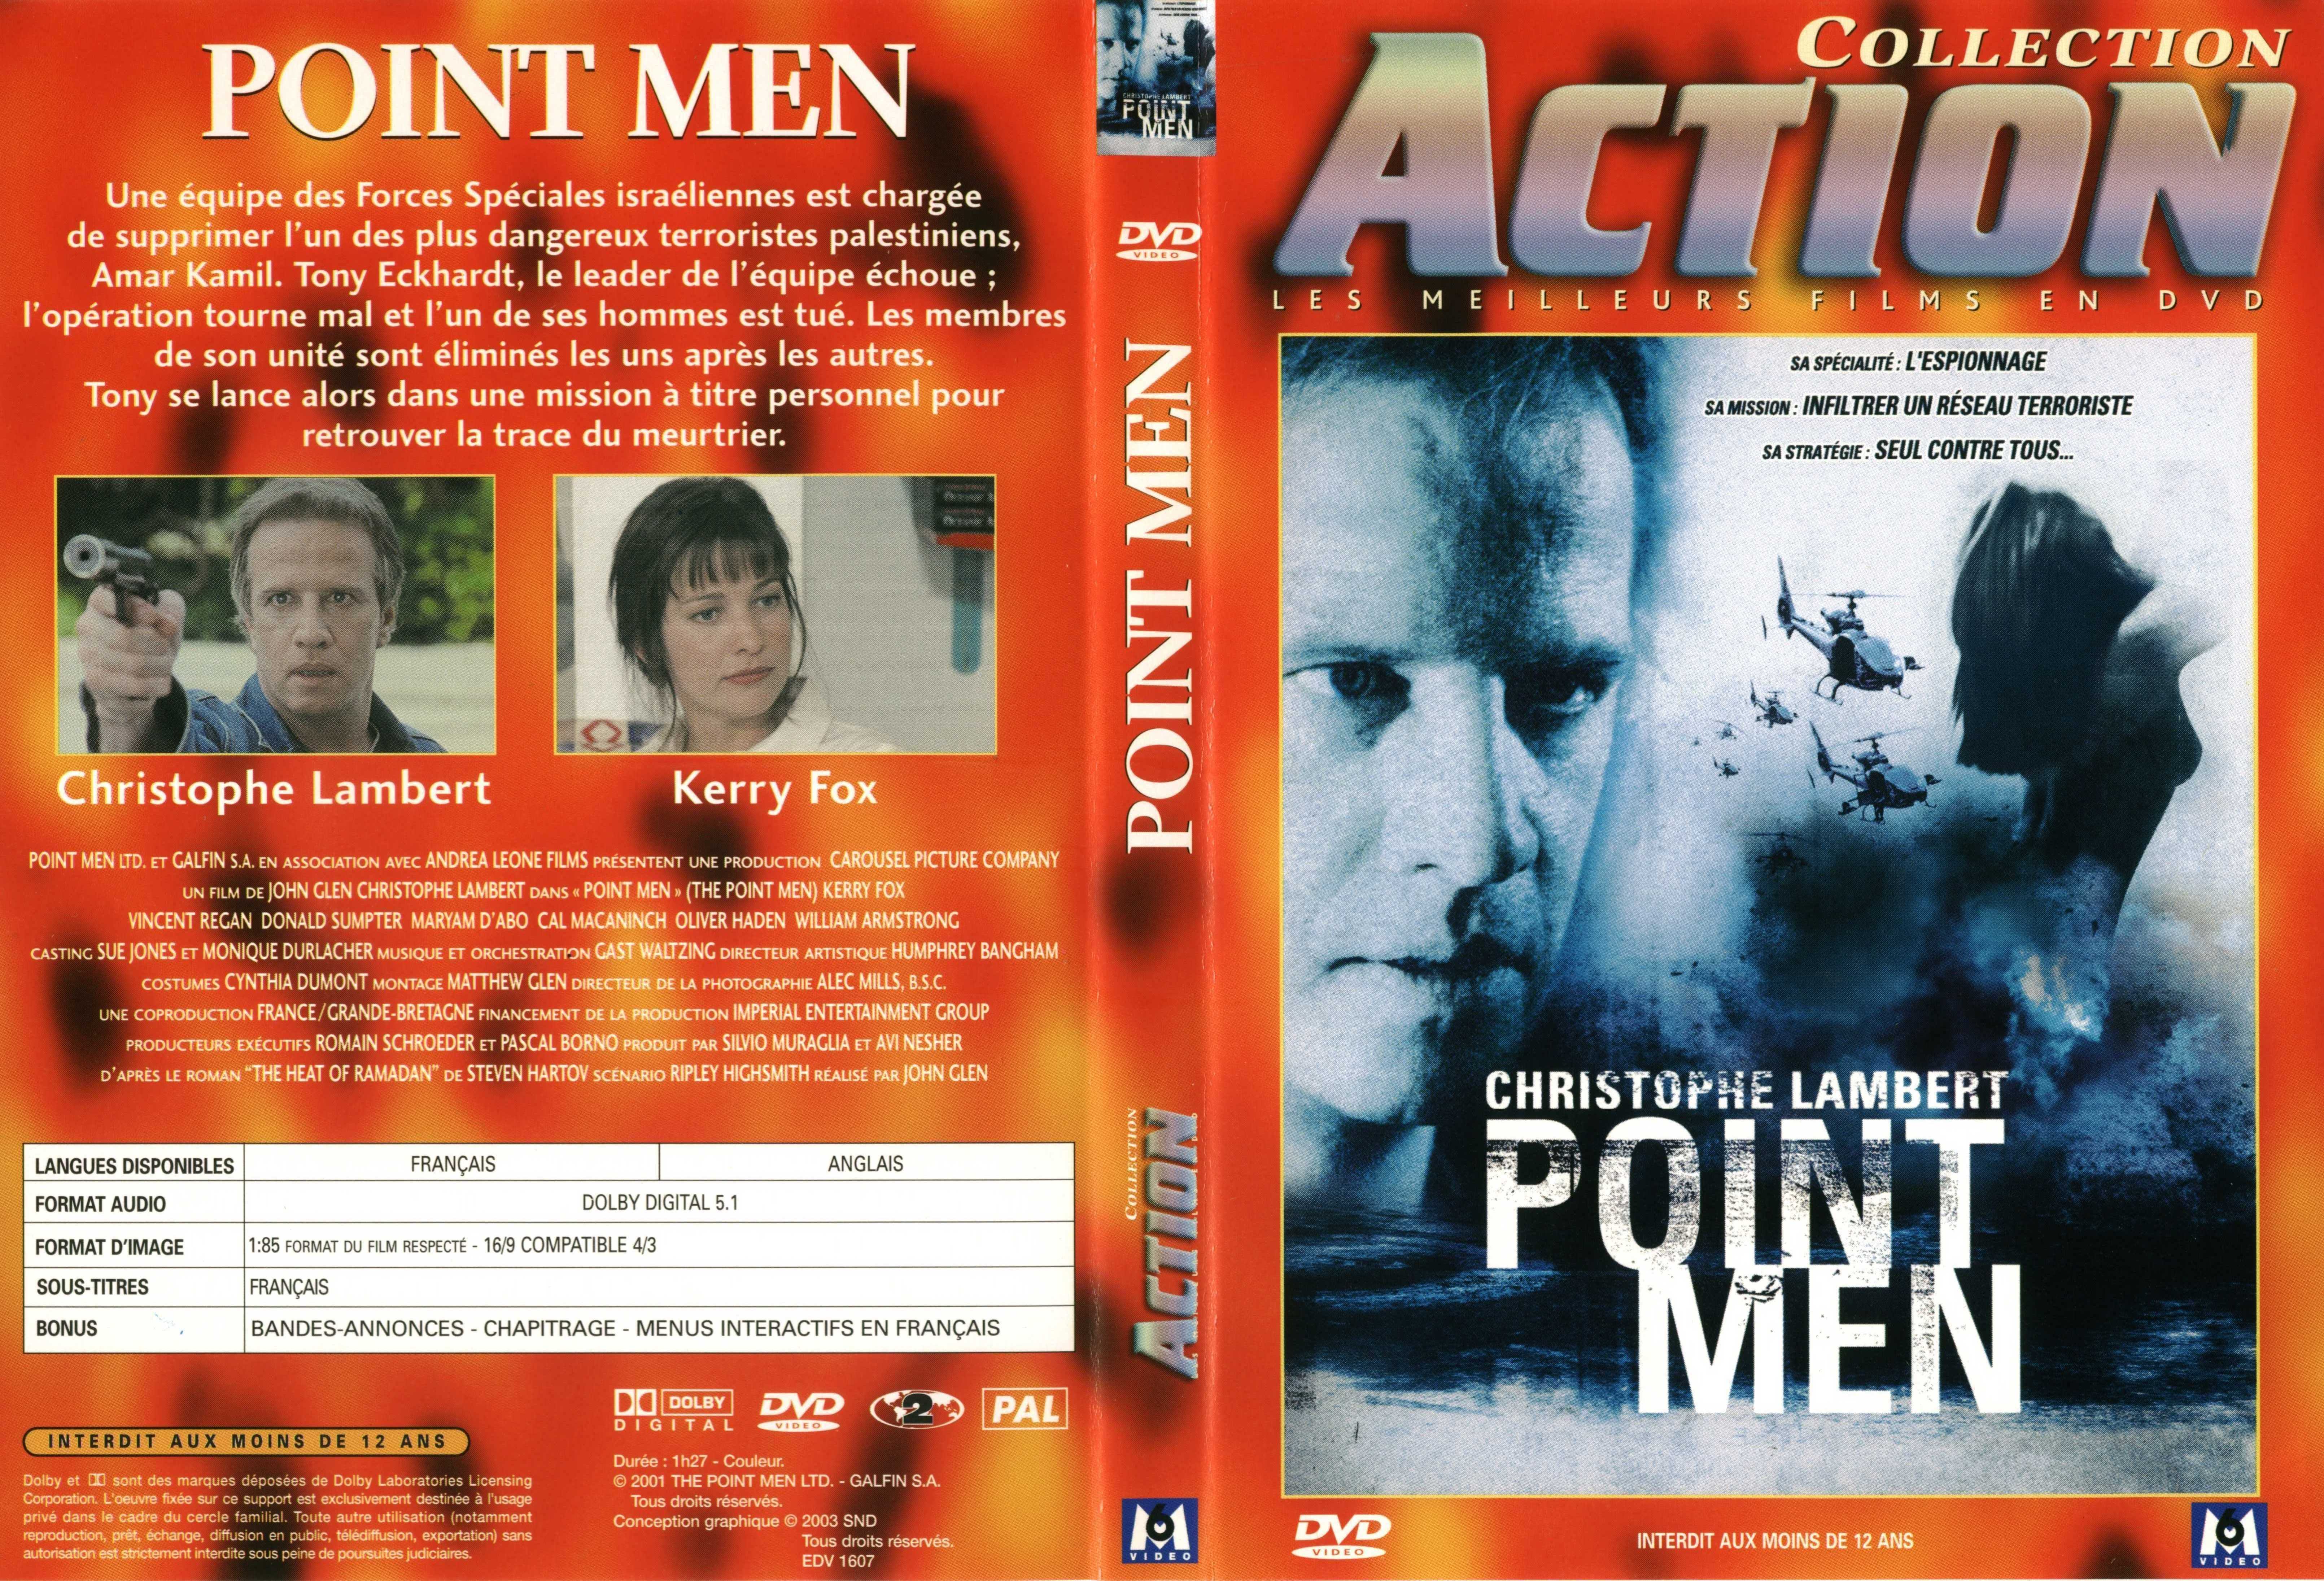 Jaquette DVD Point Men v2